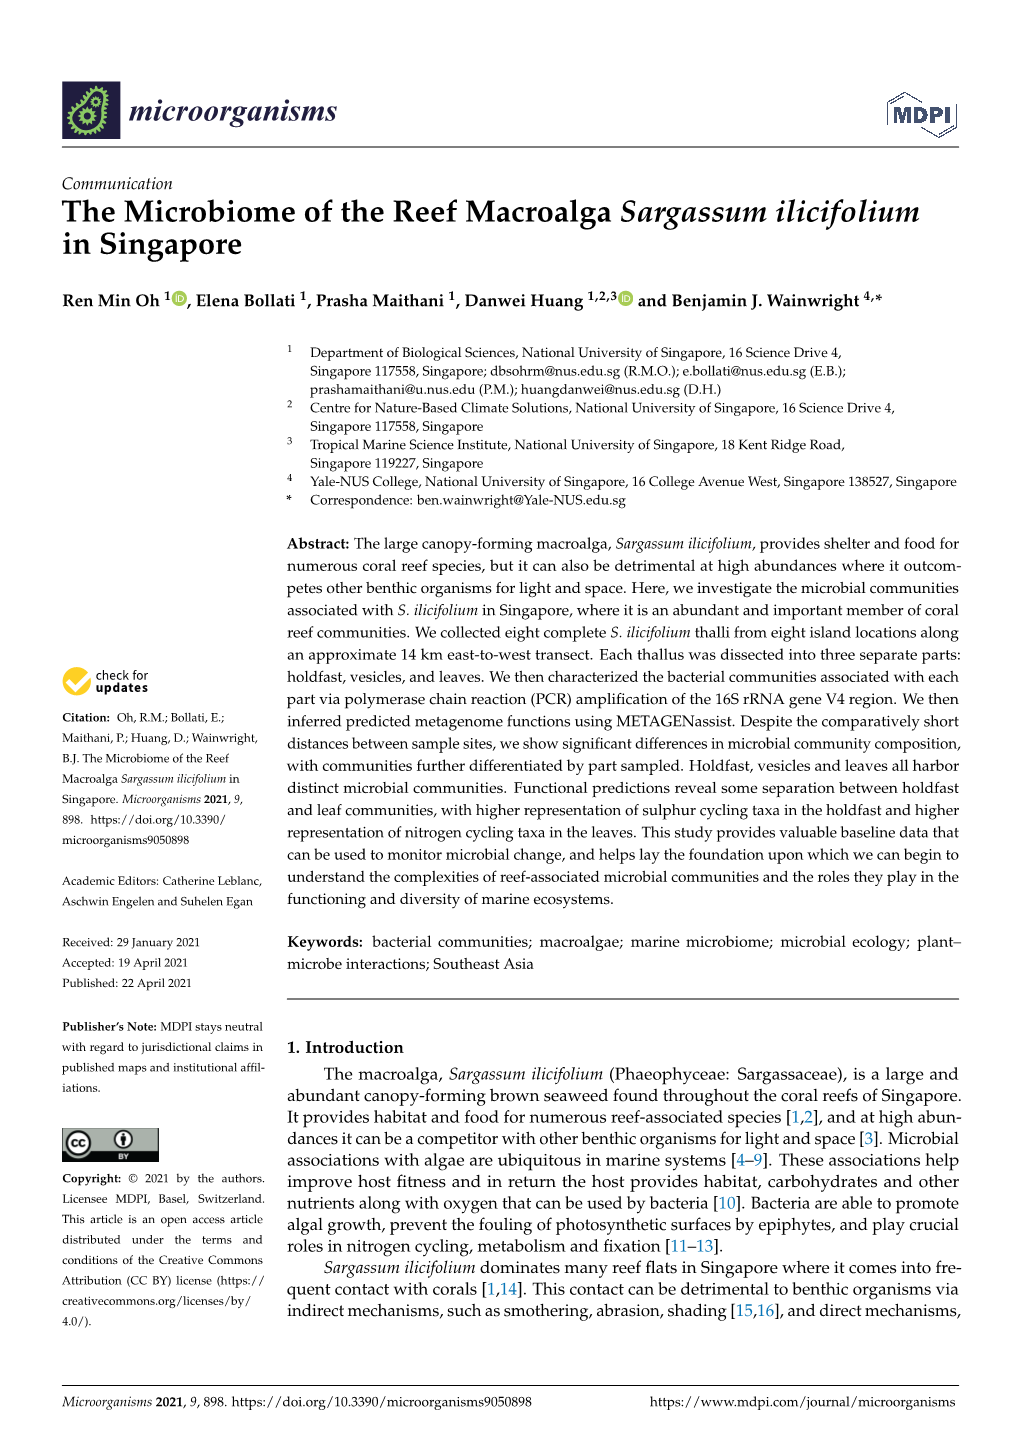 The Microbiome of the Reef Macroalga Sargassum Ilicifolium in Singapore